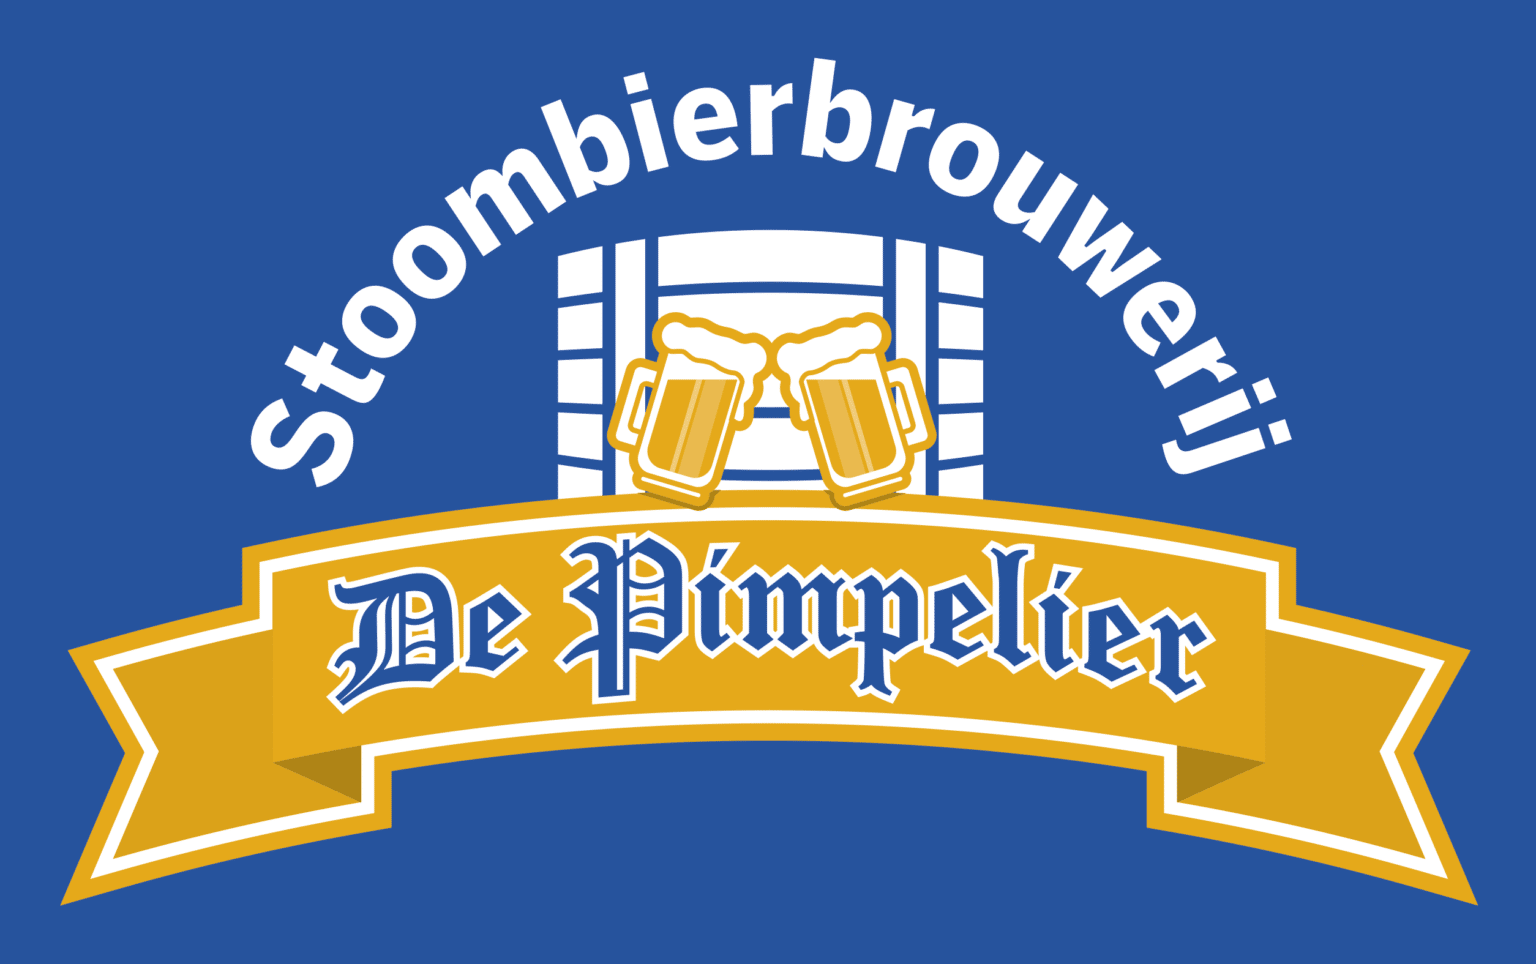 Stoombierbrouwerij-De-Pimpelier-1536x964